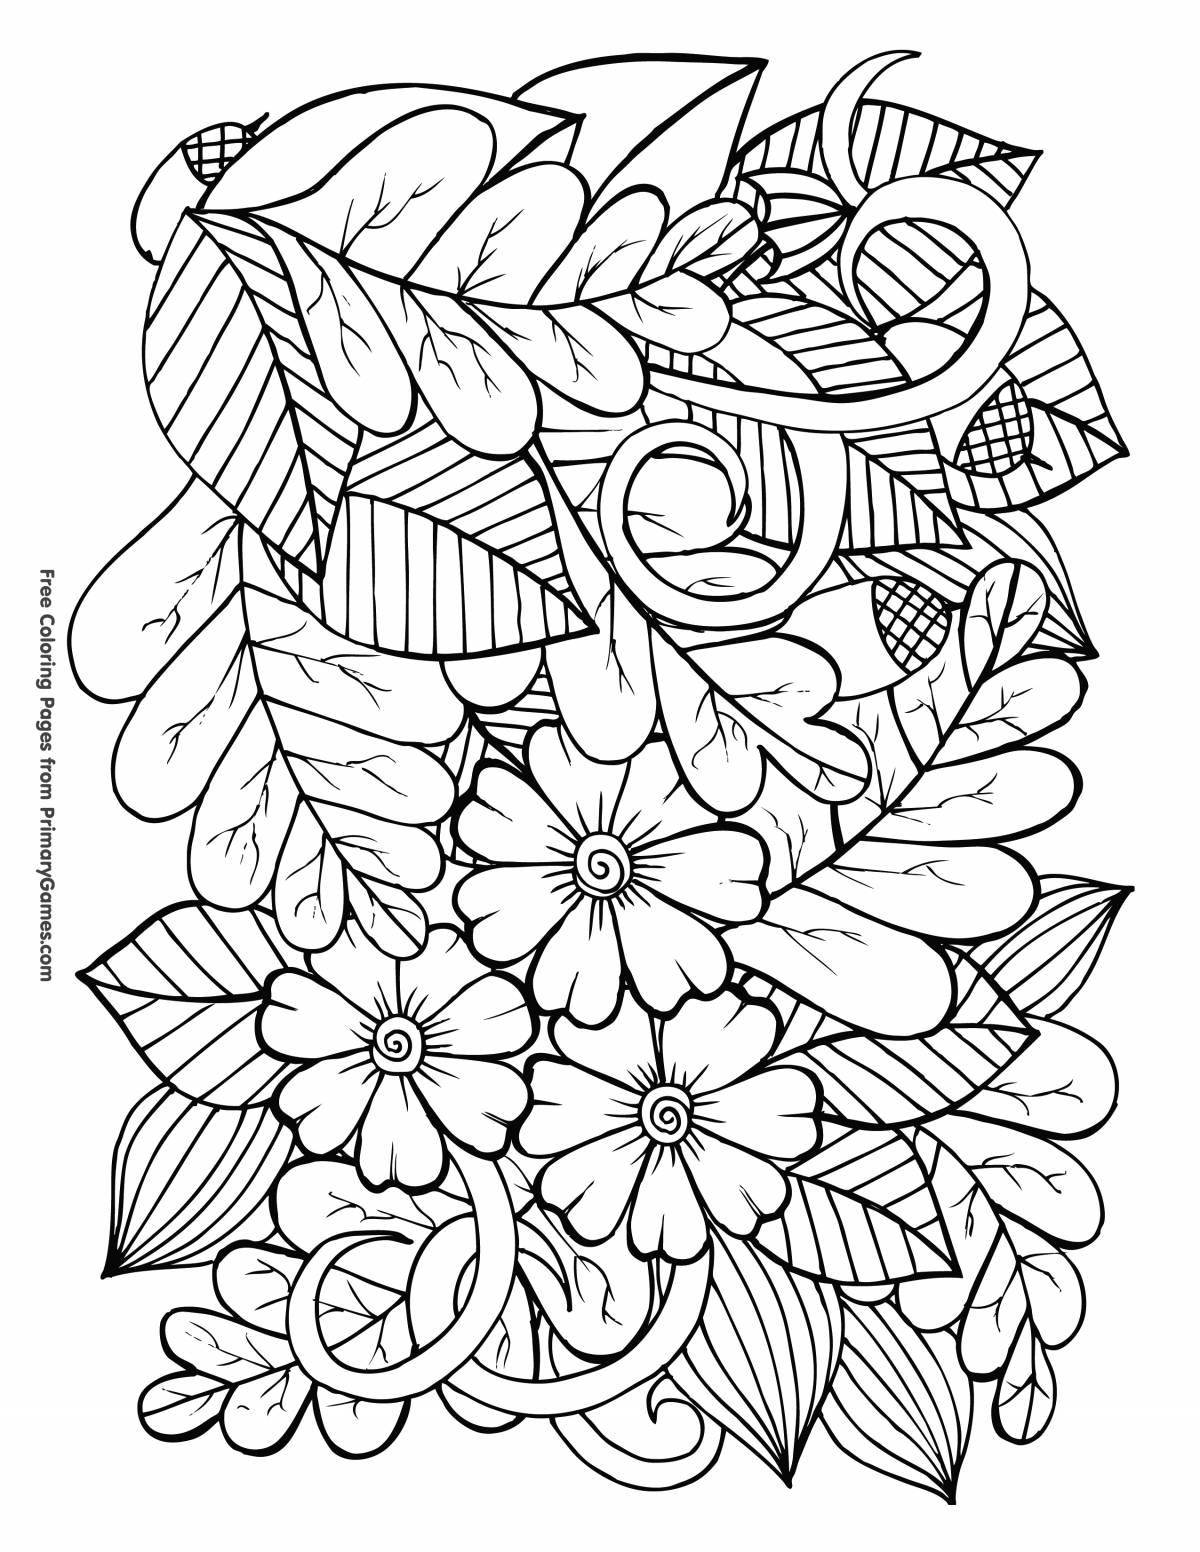 Coloring page joyful autumn bouquet